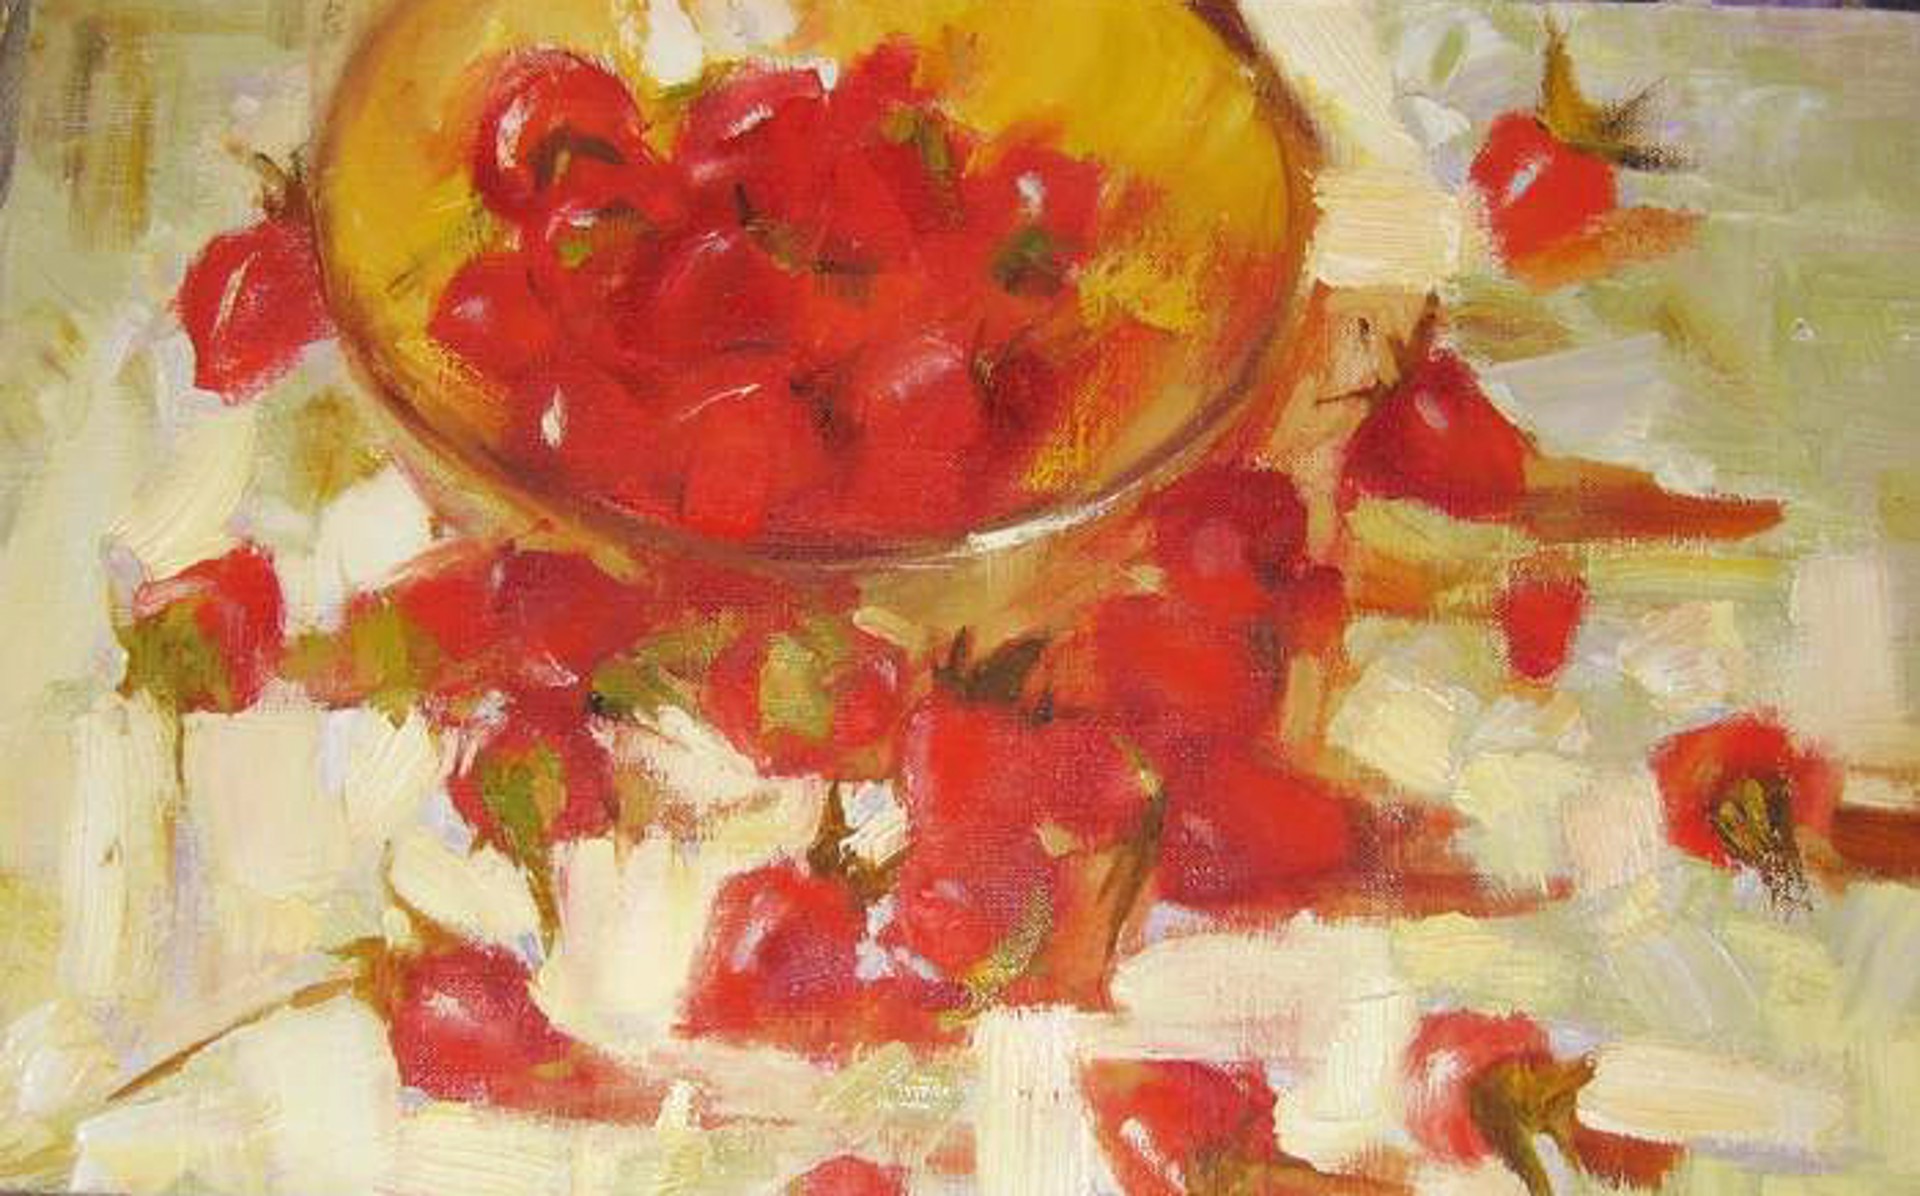 Strawberries by Yana Golubyatnikova